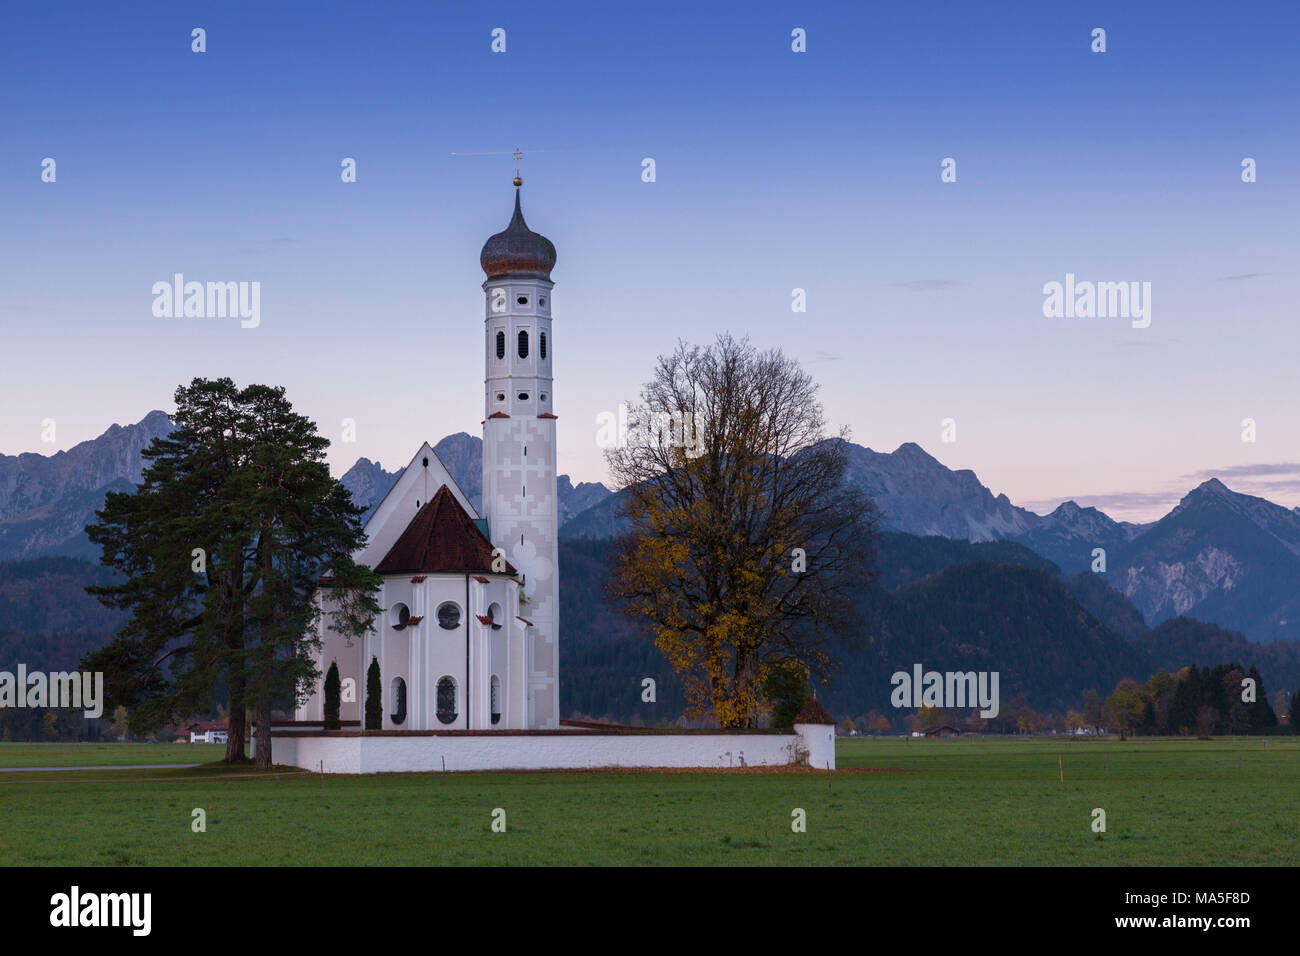 Sonnenaufgang auf dem Hl. Coloman Kirche umgeben von Wäldern. Schwangau, Füssen, Bayern, im Südwesten von Bayern, Deutschland, Europa. Stockfoto